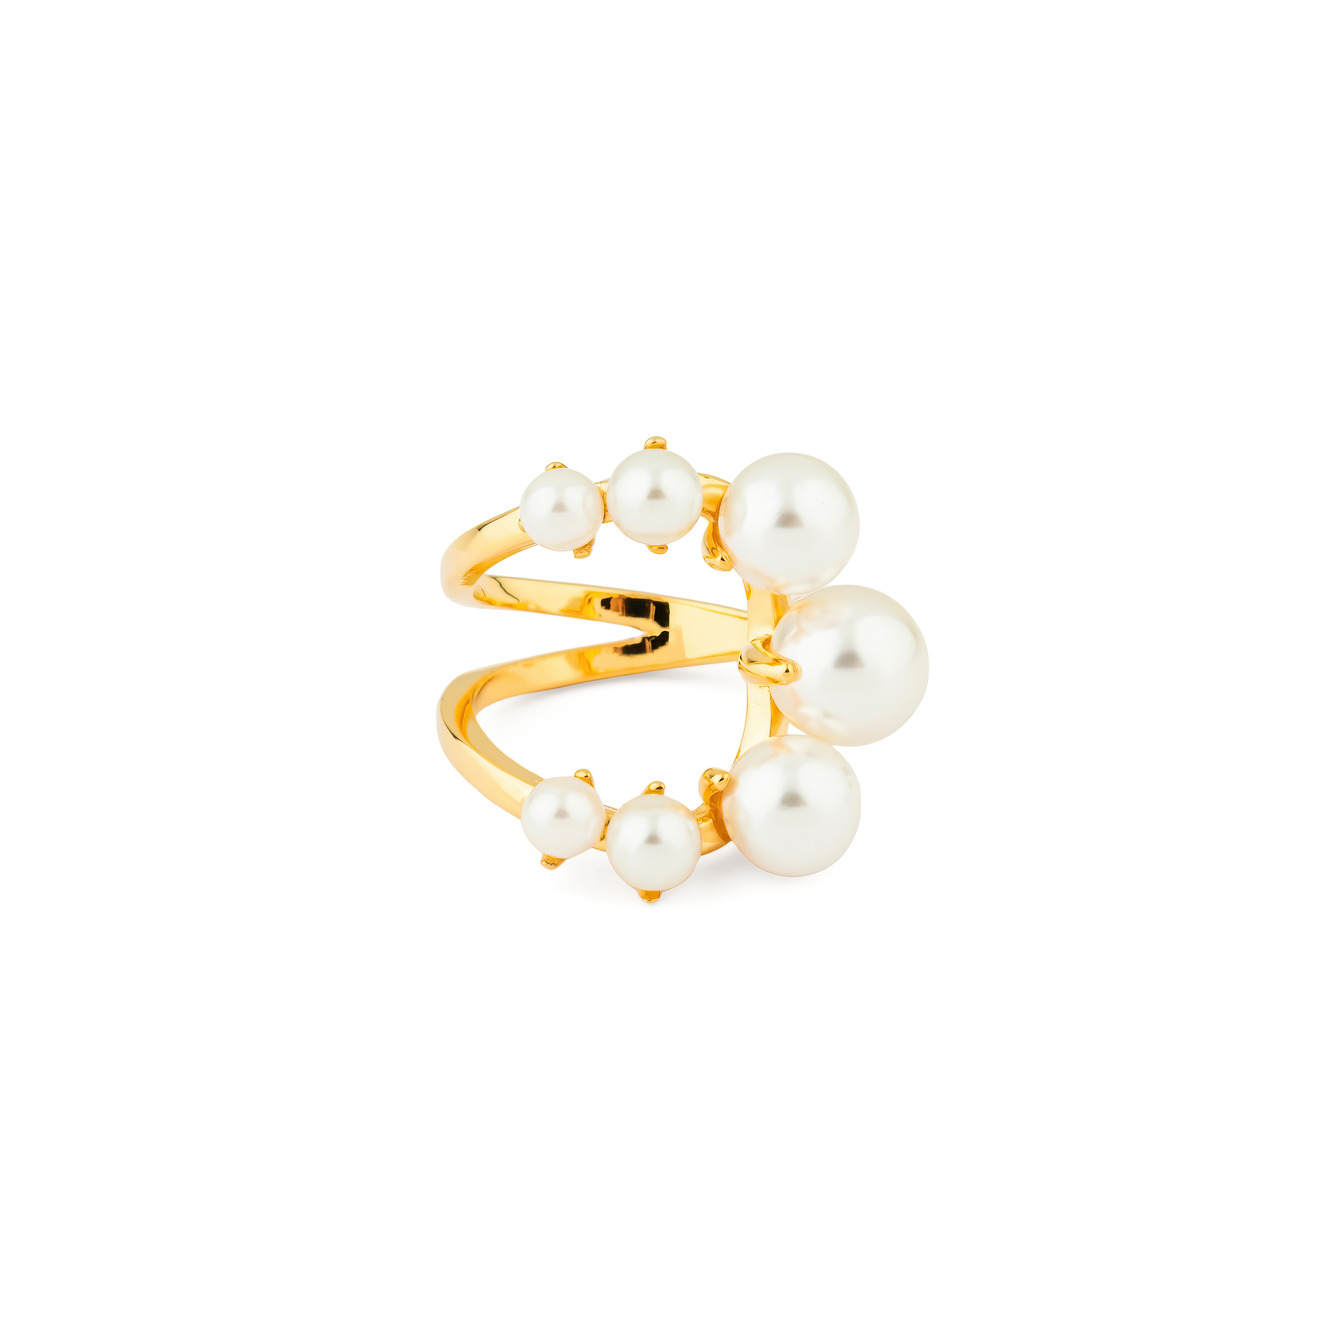 Aqua Золотистое открытое кольцо с белыми бусинами